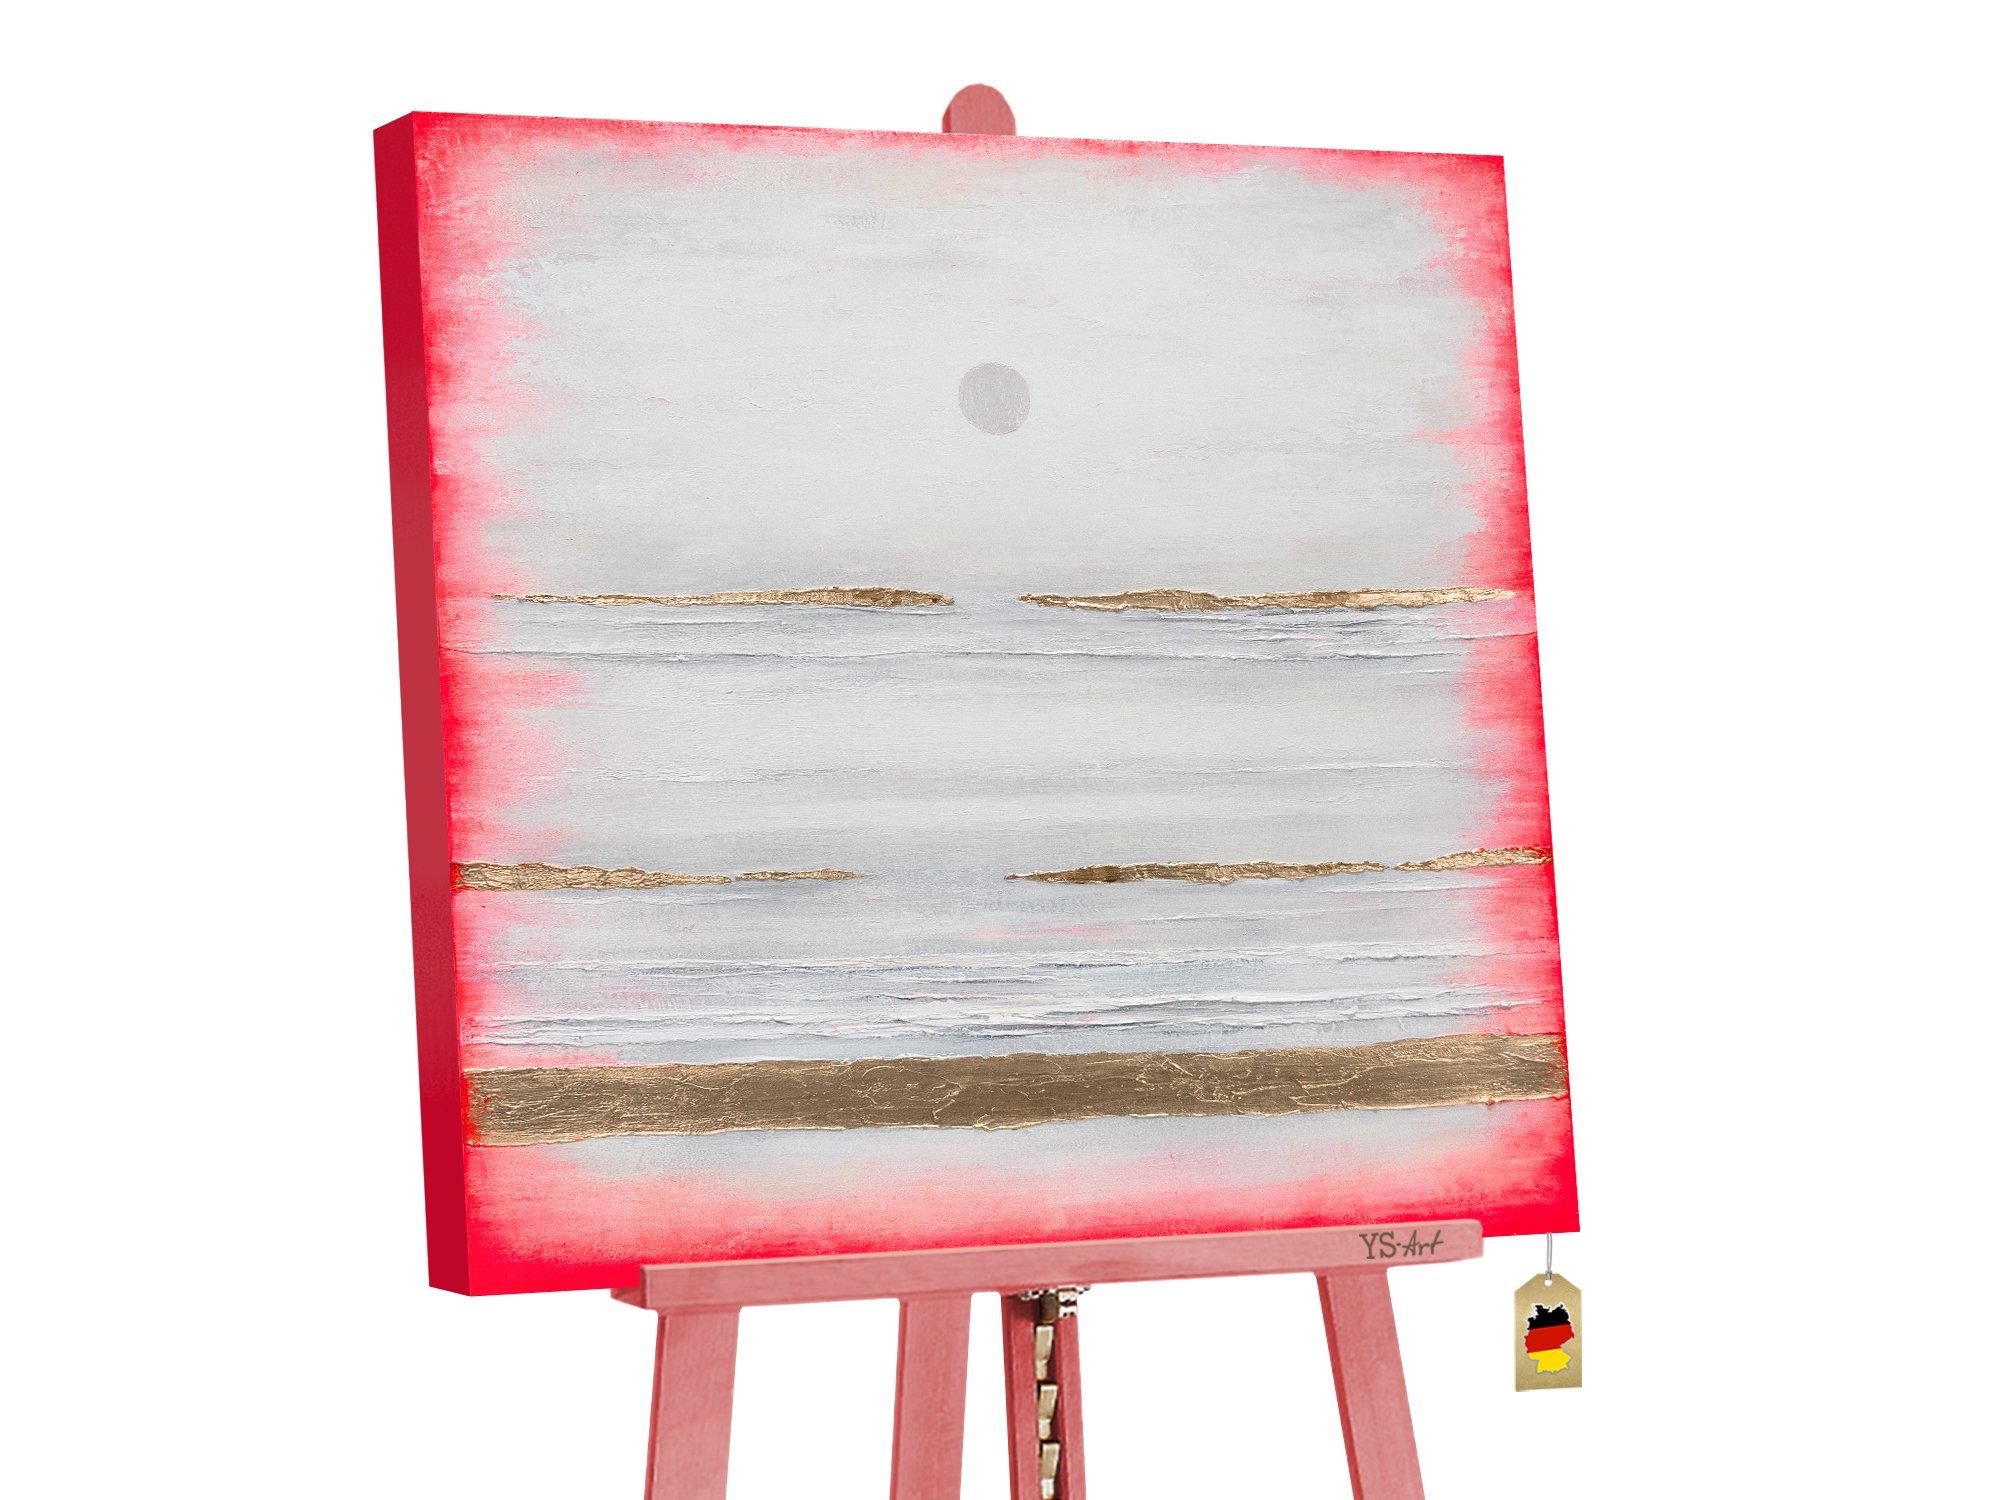 YS-Art Gemälde Traum, Abstraktion, Leinwand Bild Handgemalt Meer Landschaft in Rot Gold